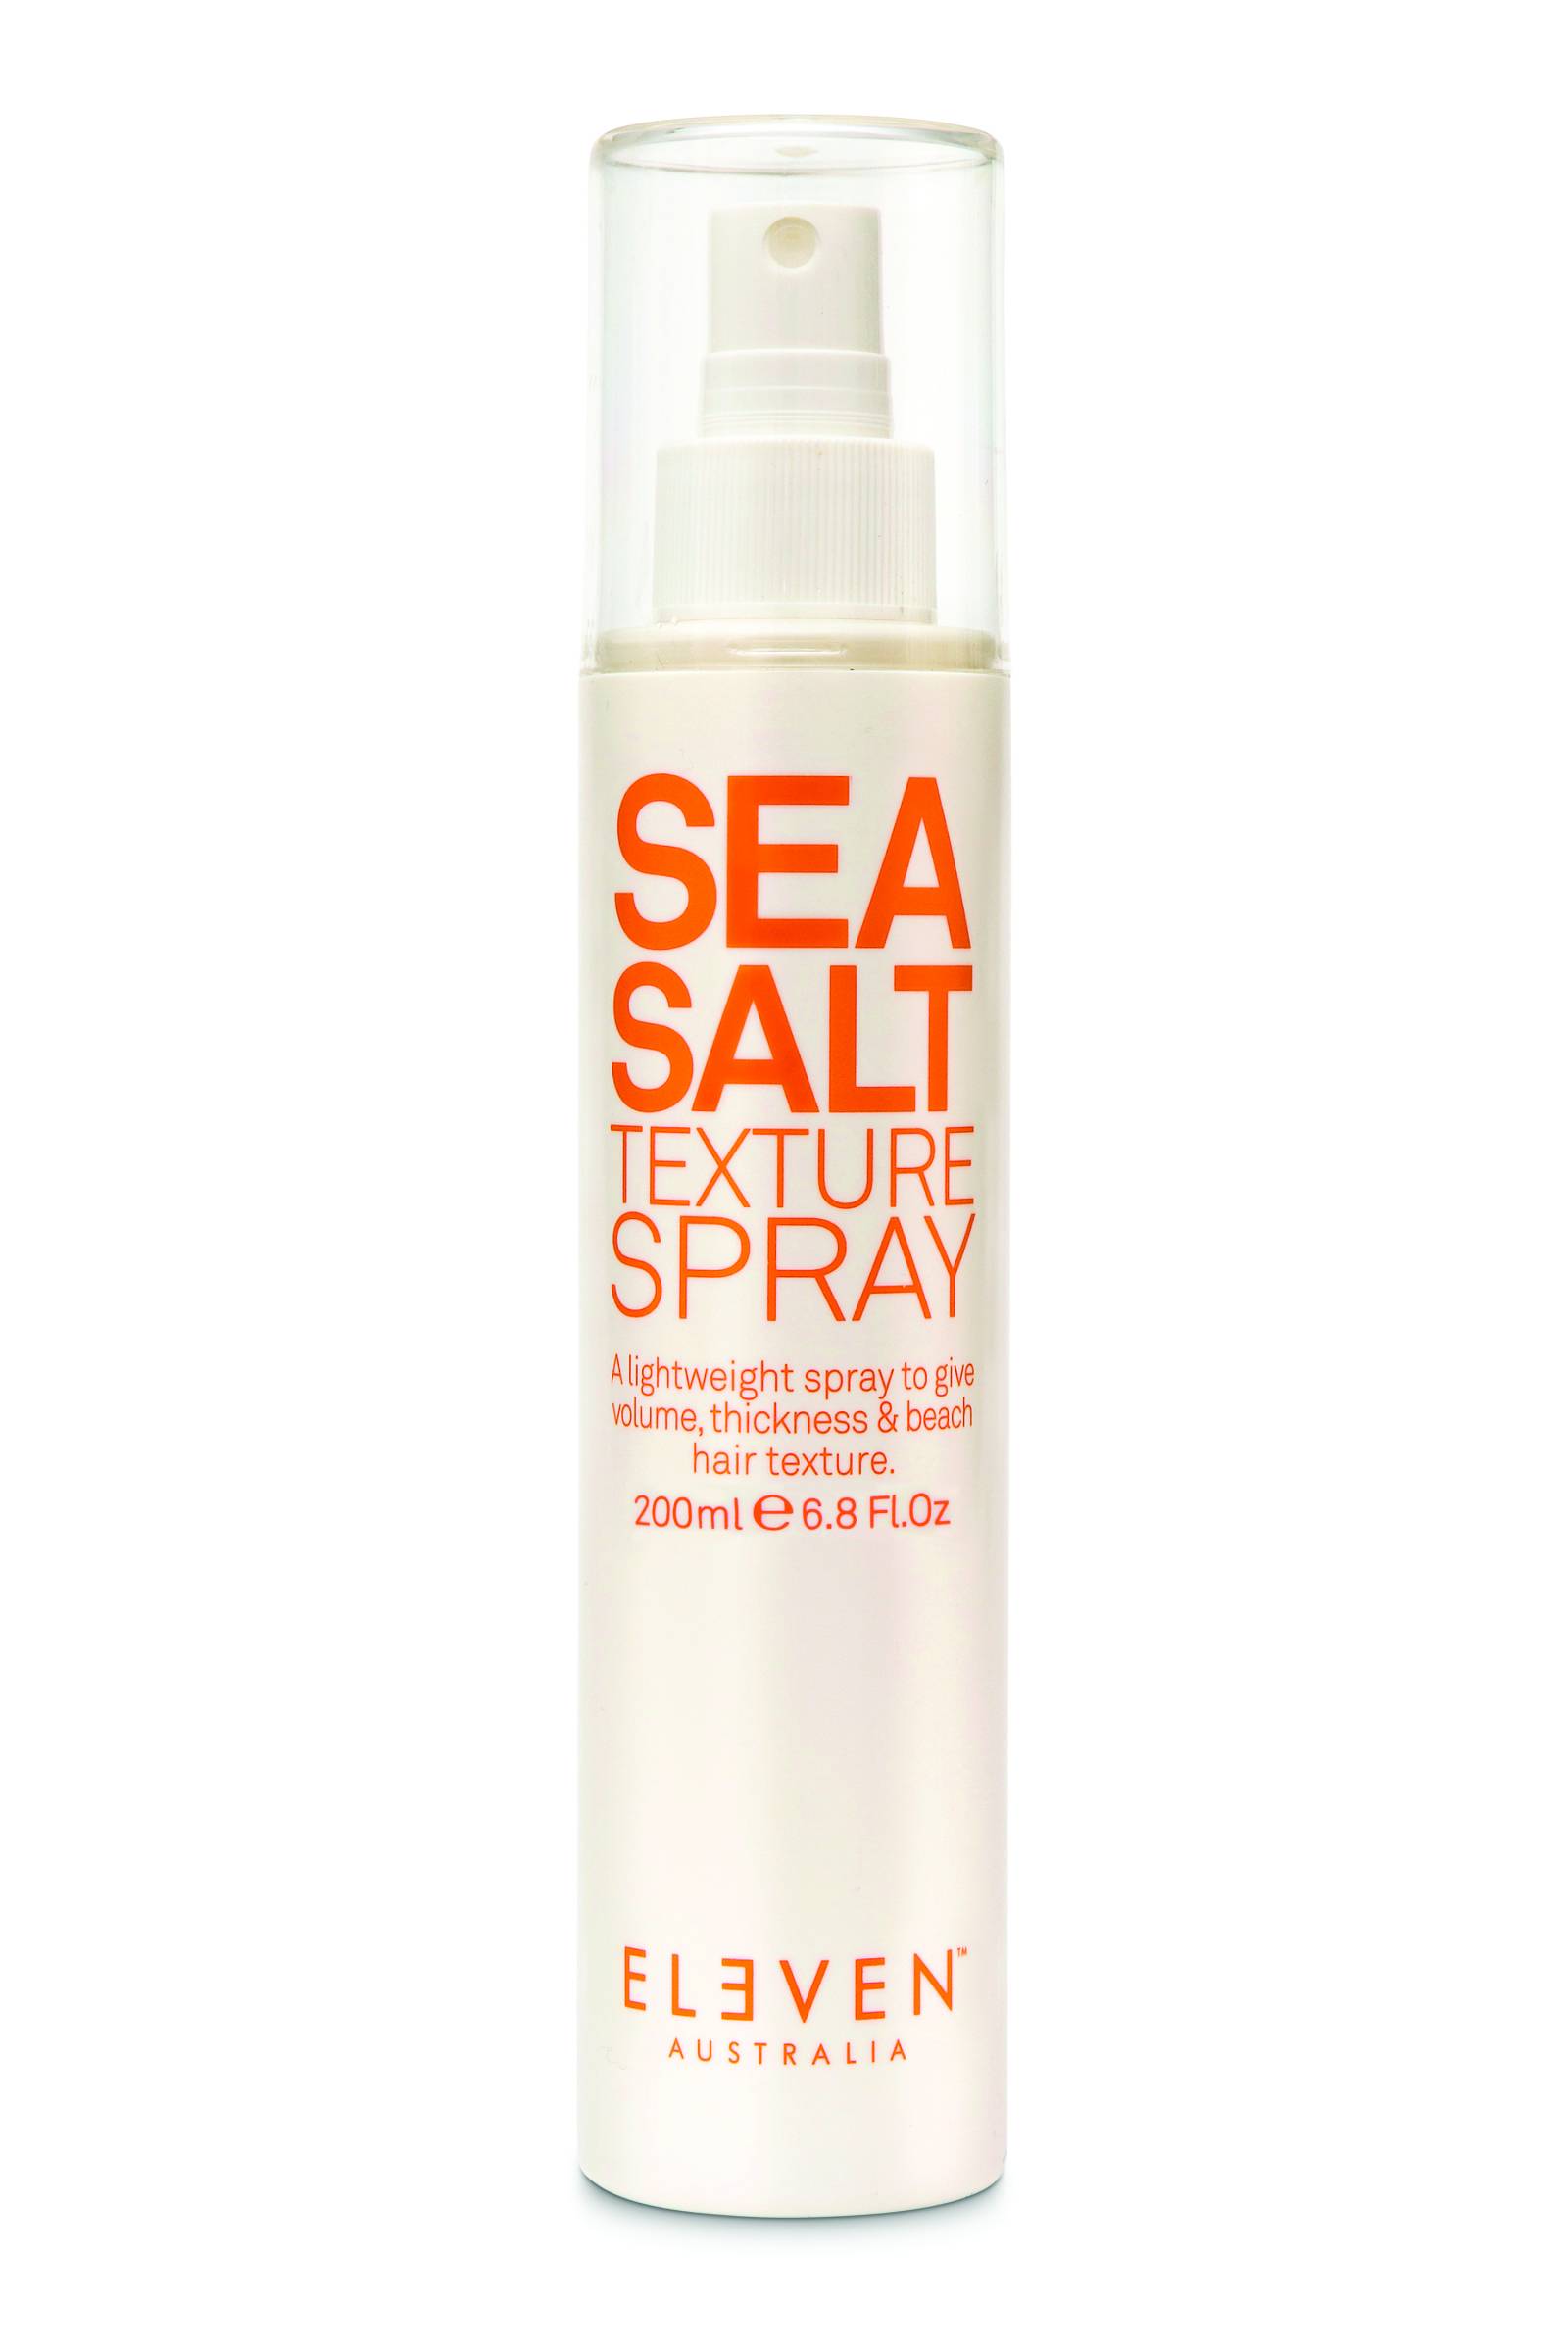 Sól morska w sprayu Eleven Australia, 74,90 zł, hair2go.pl / Fot. materiały prasowe